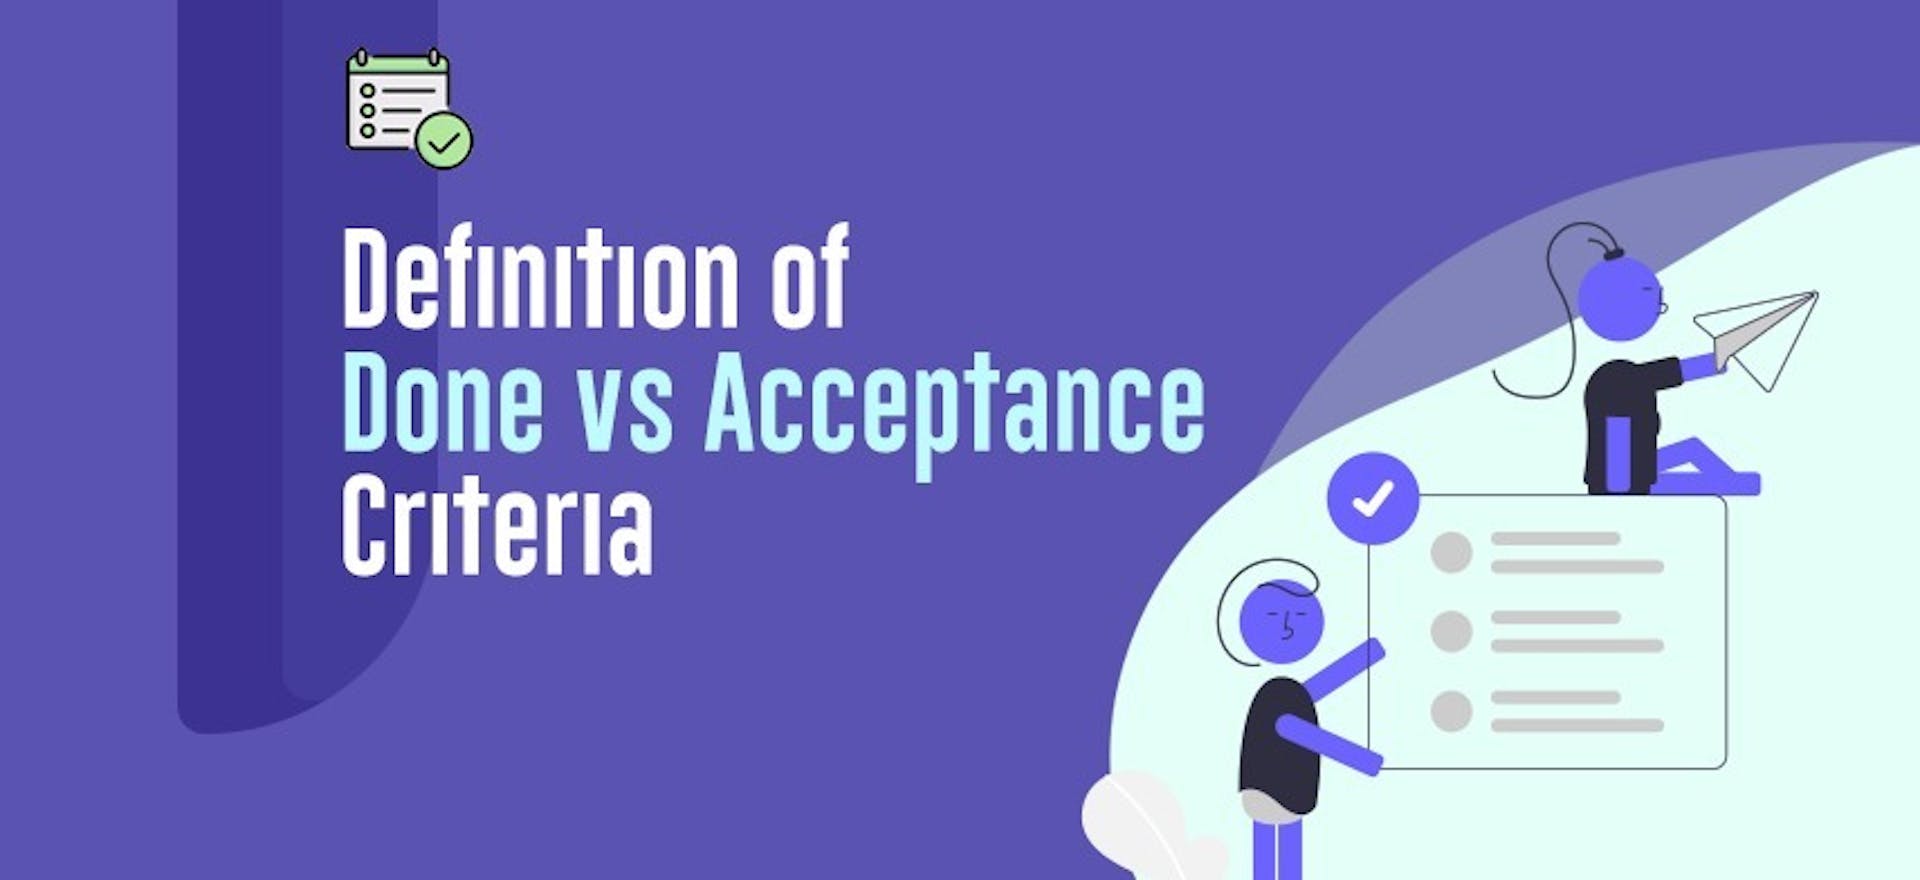 Acceptance Criteria vs Definition of Done